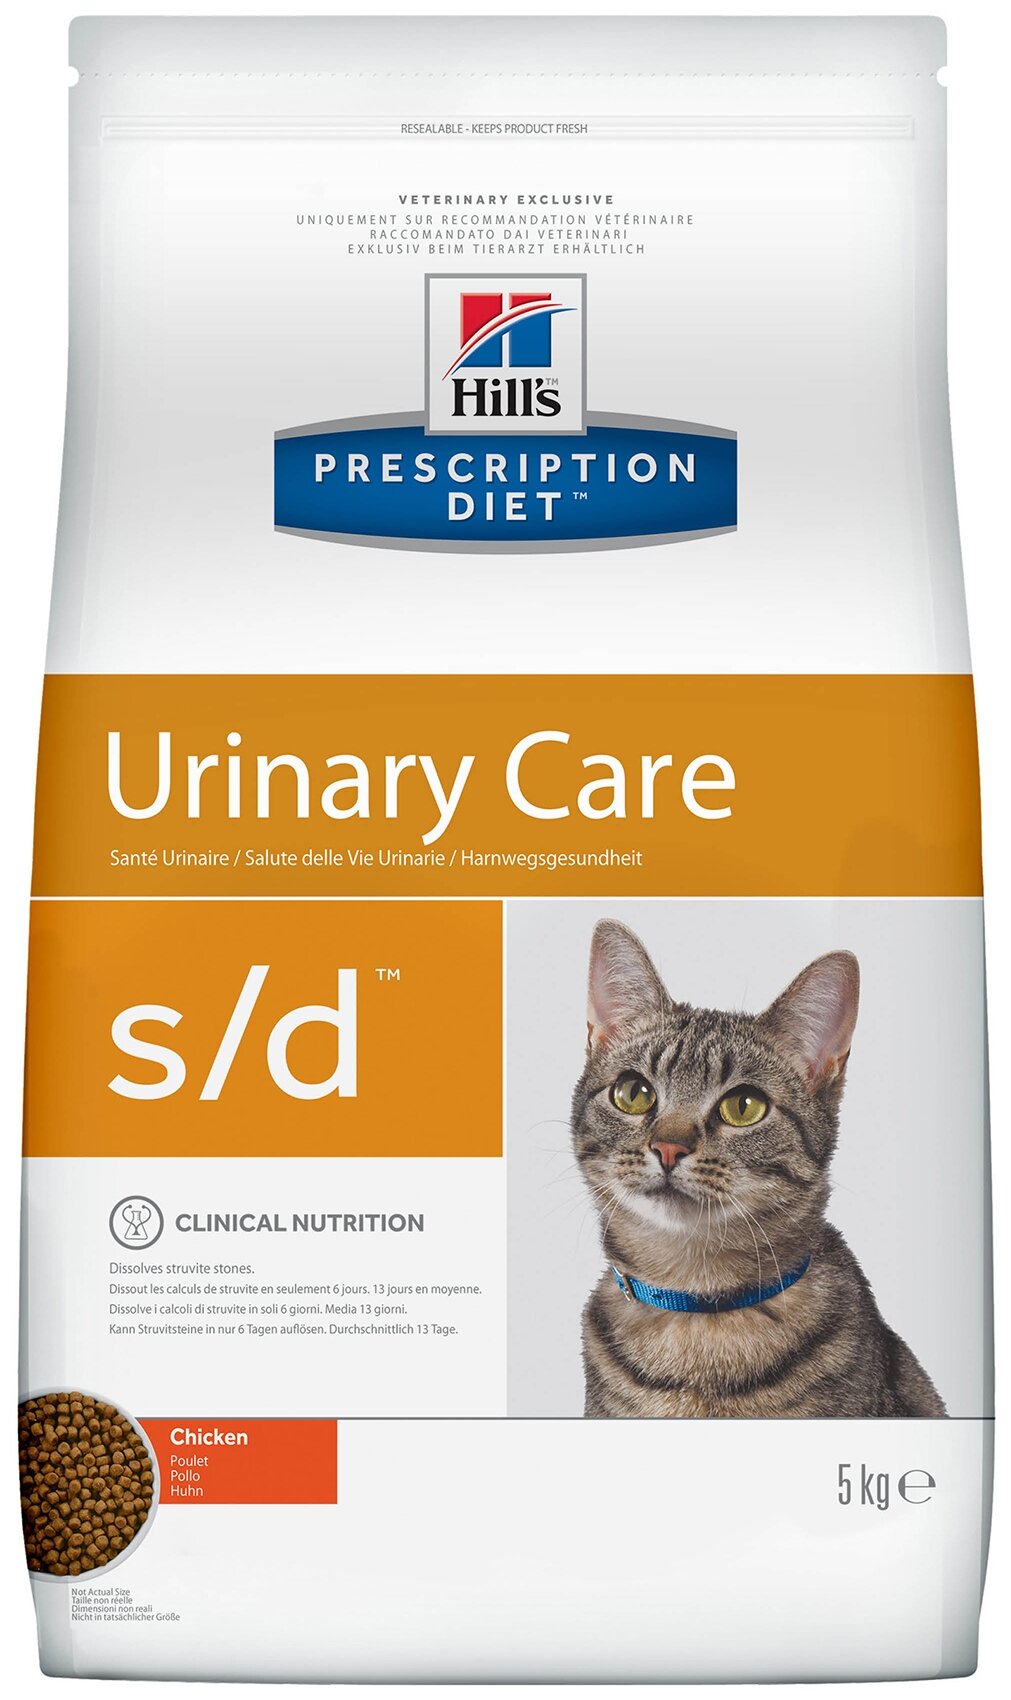 Сухой диетический корм для кошек Hill's Prescription Diet s/d Urinary Care при профилактике мочекаменной болезни (мкб), курицей 5 кг - фотография № 1